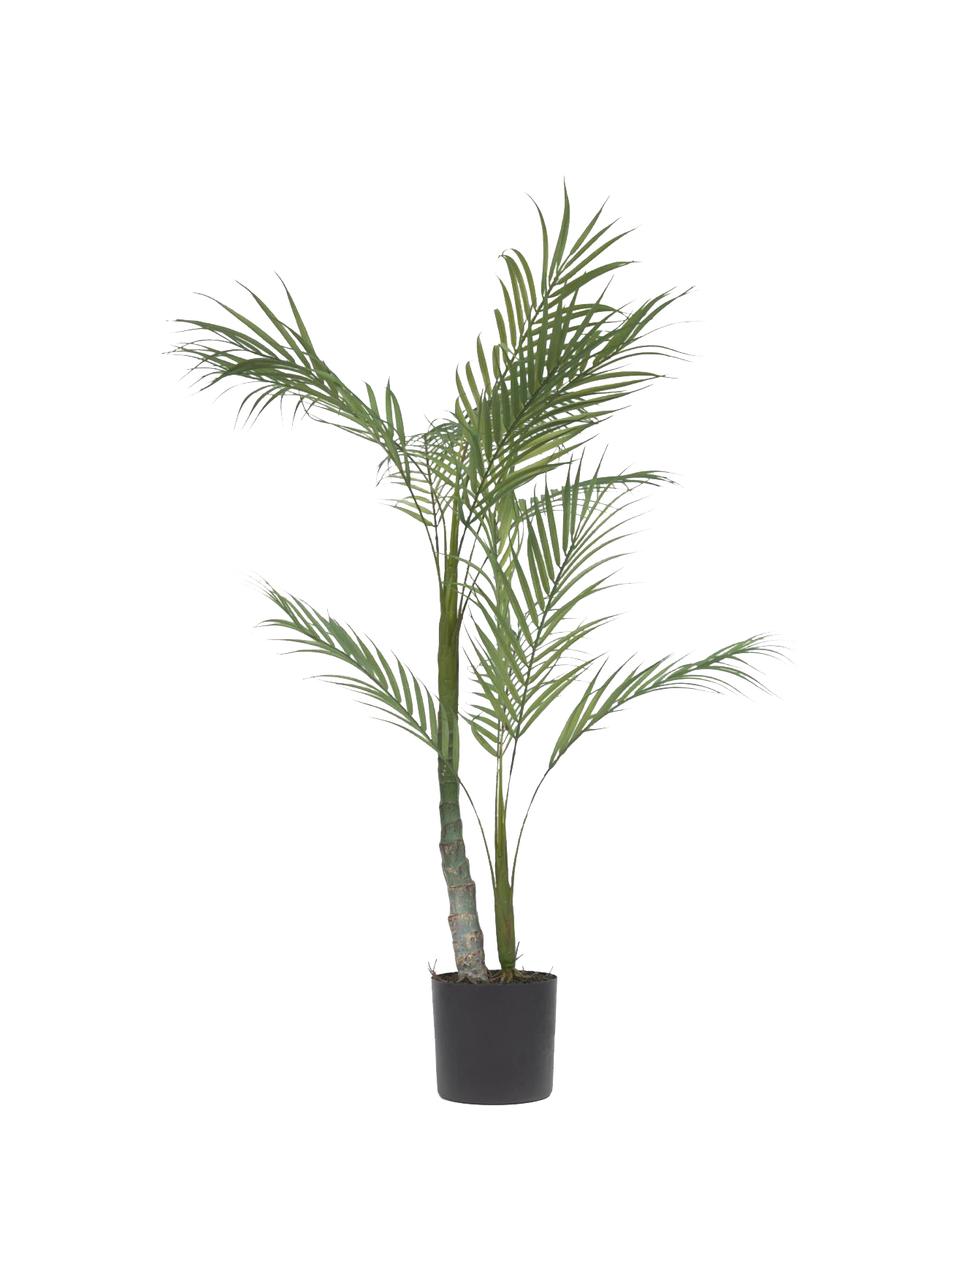 Dekoracyjna palma w doniczce, Tworzywo sztuczne, Zielony, czarny, W 84 cm